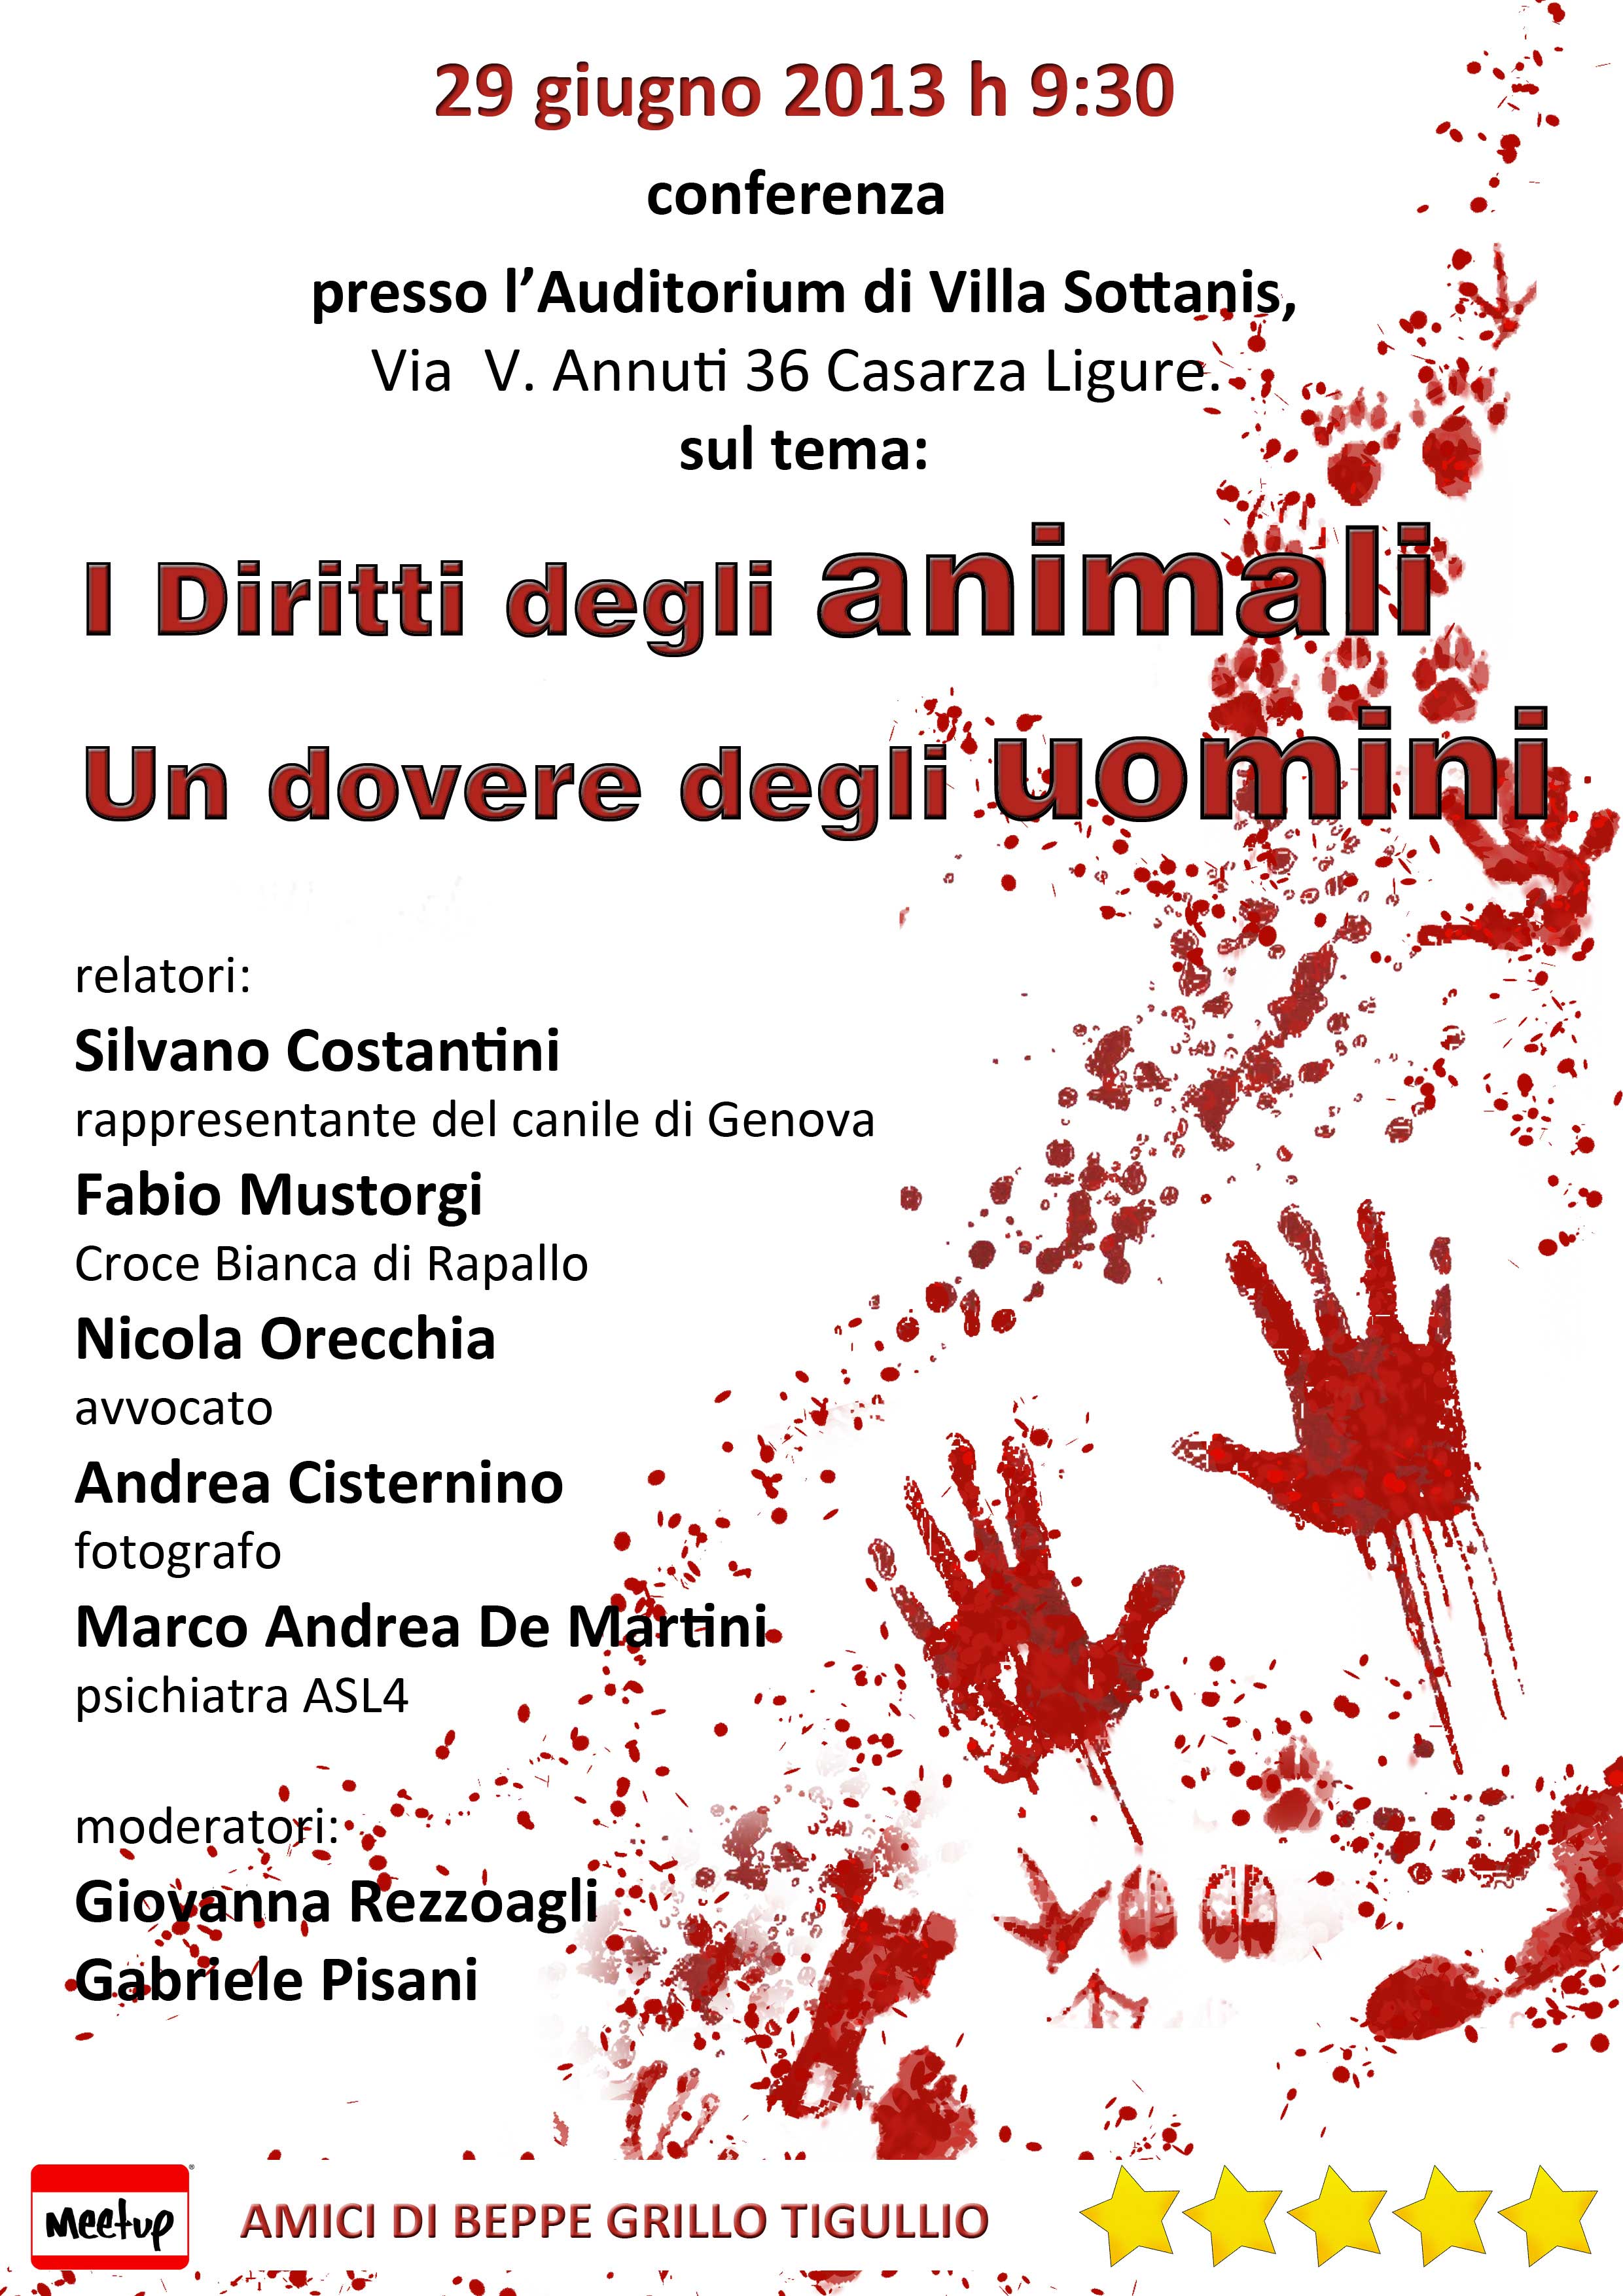 29/06Casarza Ligure: Conferenza "I diriti degli animali, un dovere degli uomini"